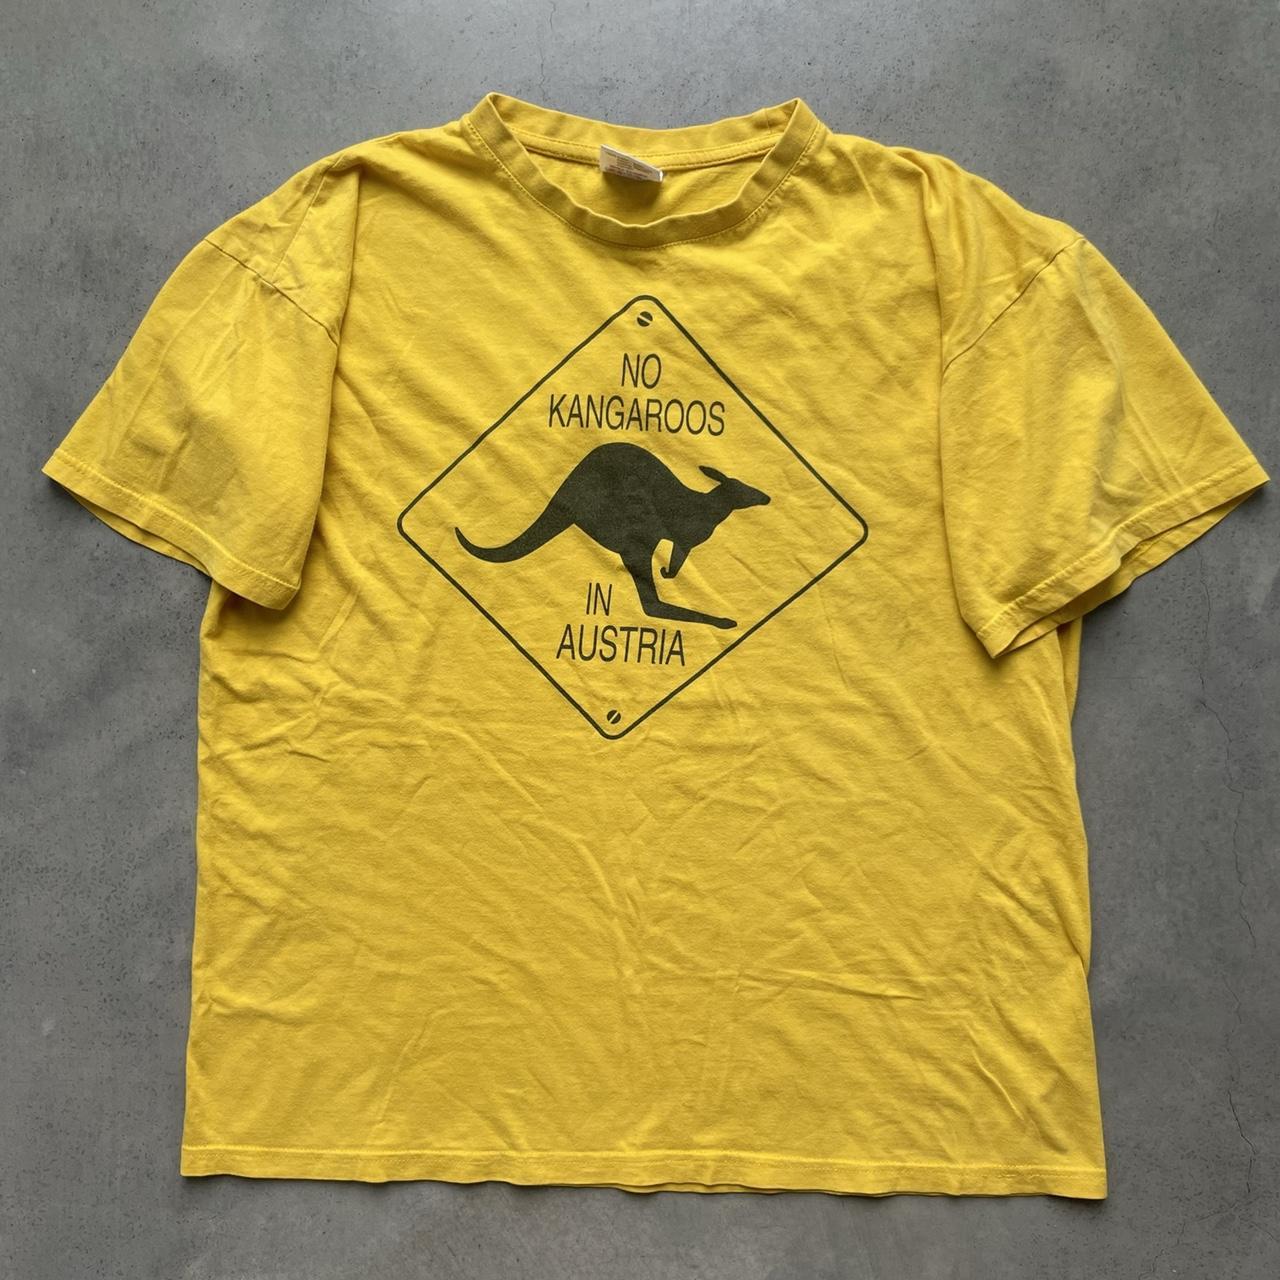 KangaROOS Men's Yellow and Black T-shirt